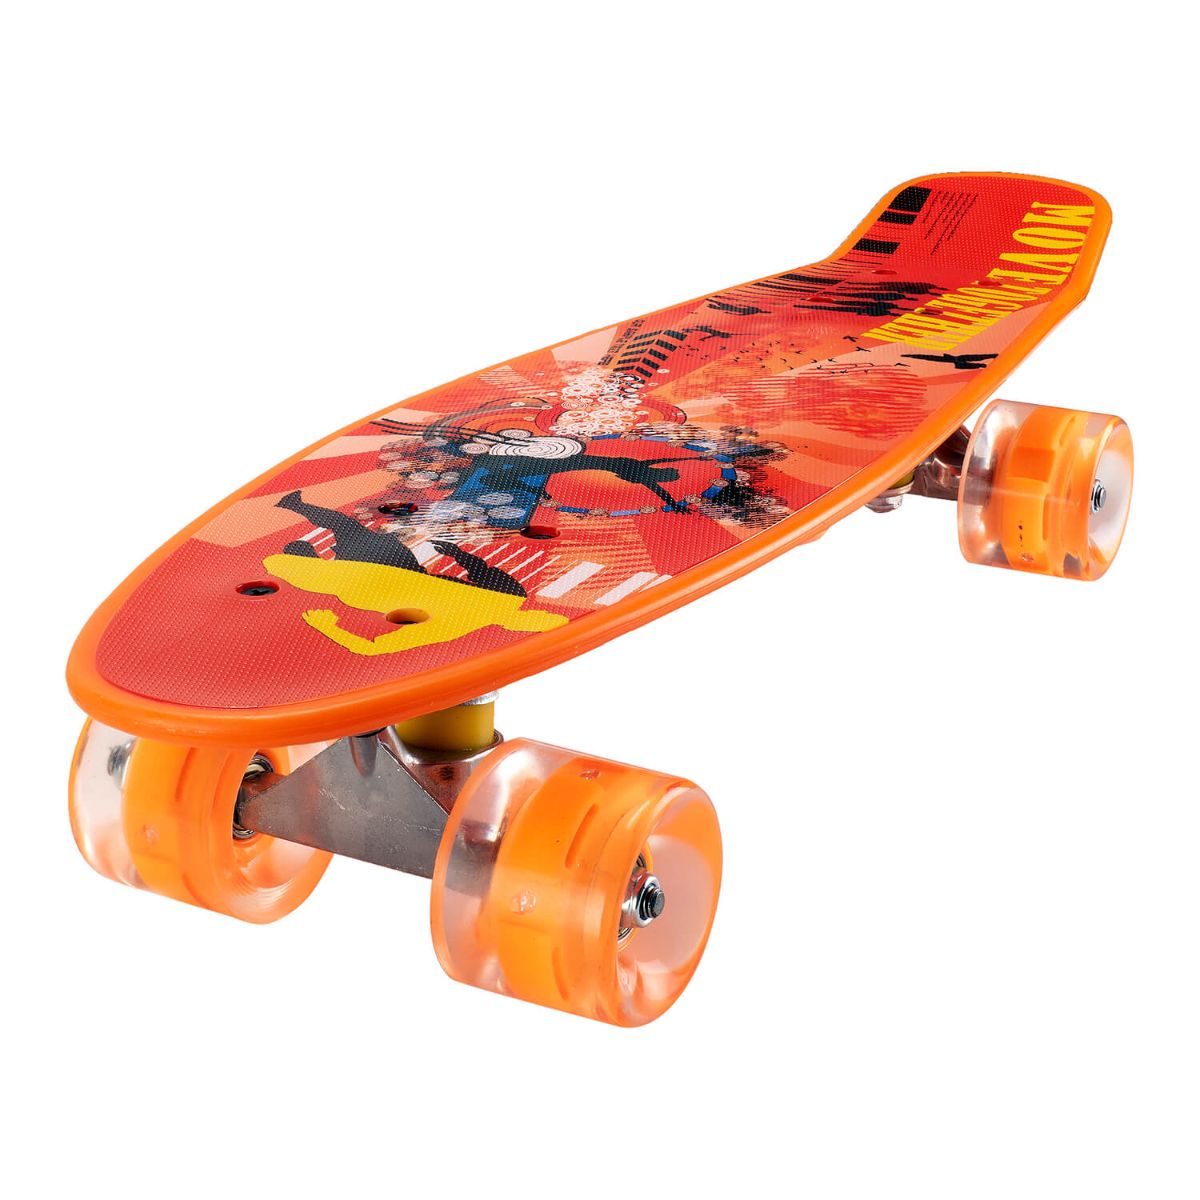 Penny board Action One, Cu roti luminoase, 22 cm, ABEC-7 PU, Aluminium 90 kg, Move Together Role si skateboard imagine 2022